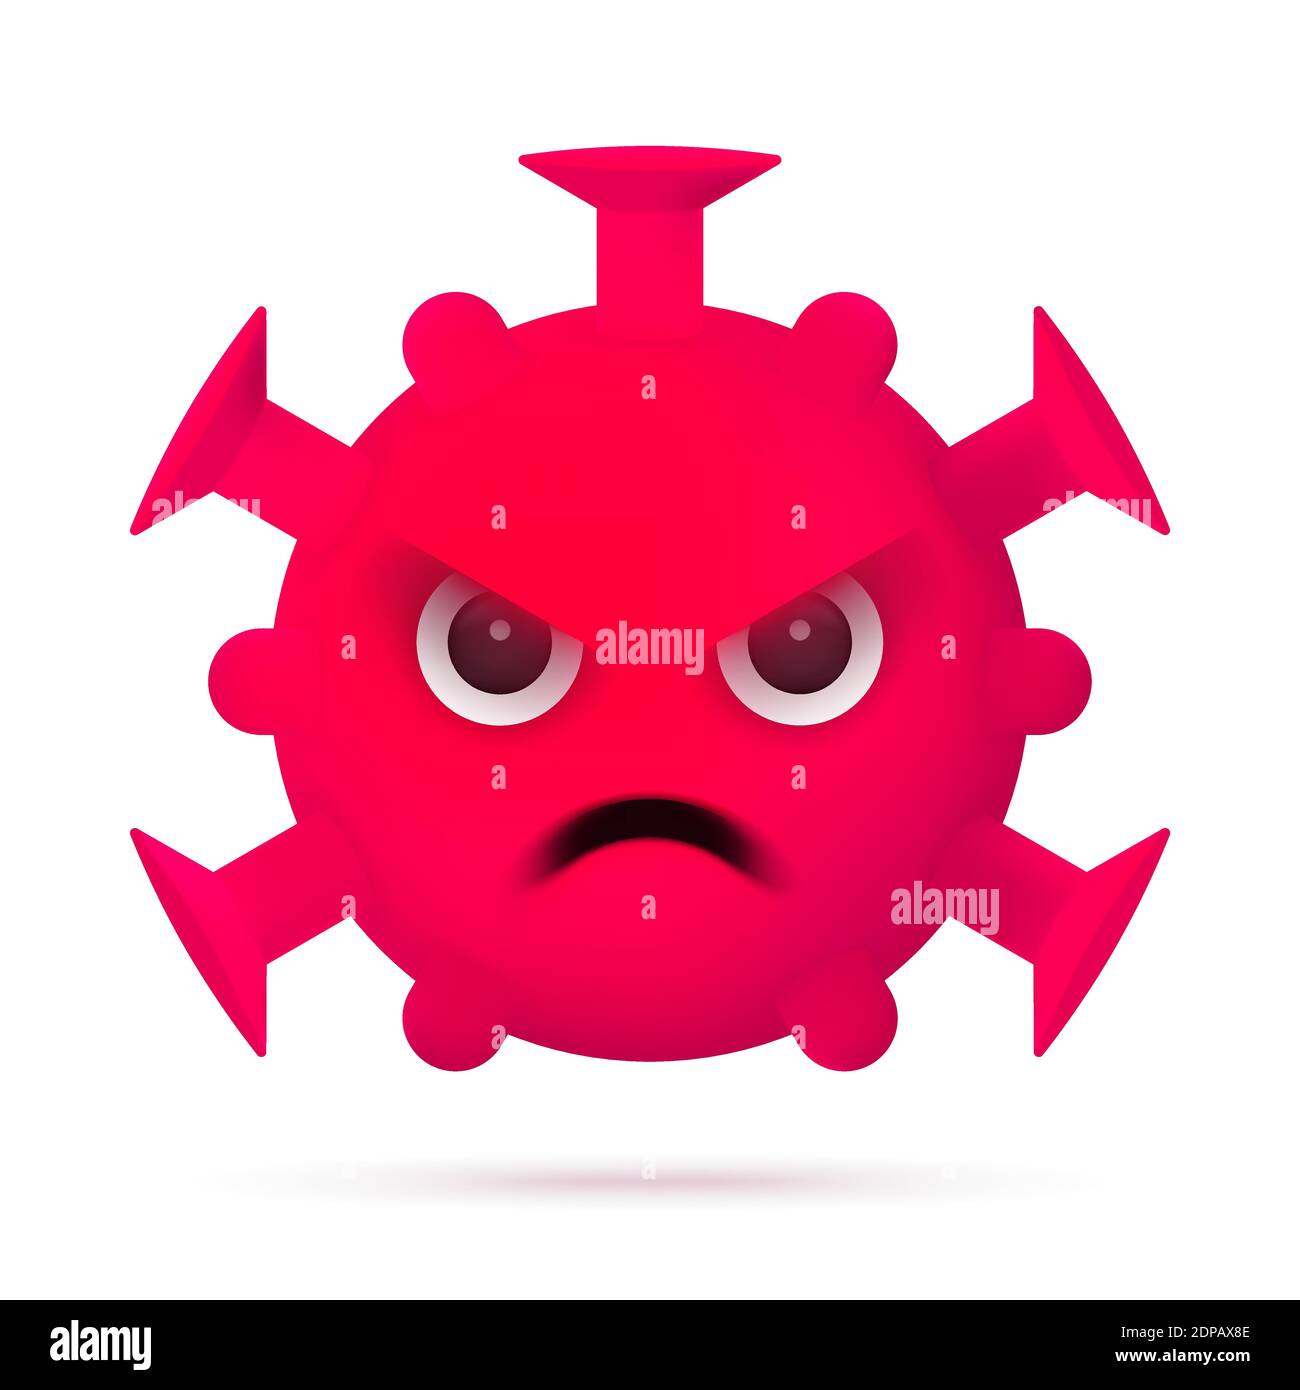 Red Angry Virus Emoticon. Simbolo del personaggio di Coronavirus Emoji. COVID-19 icona Pandemic 3D. Illustrazione vettoriale piatta moderna. EPS 10 Illustrazione Vettoriale